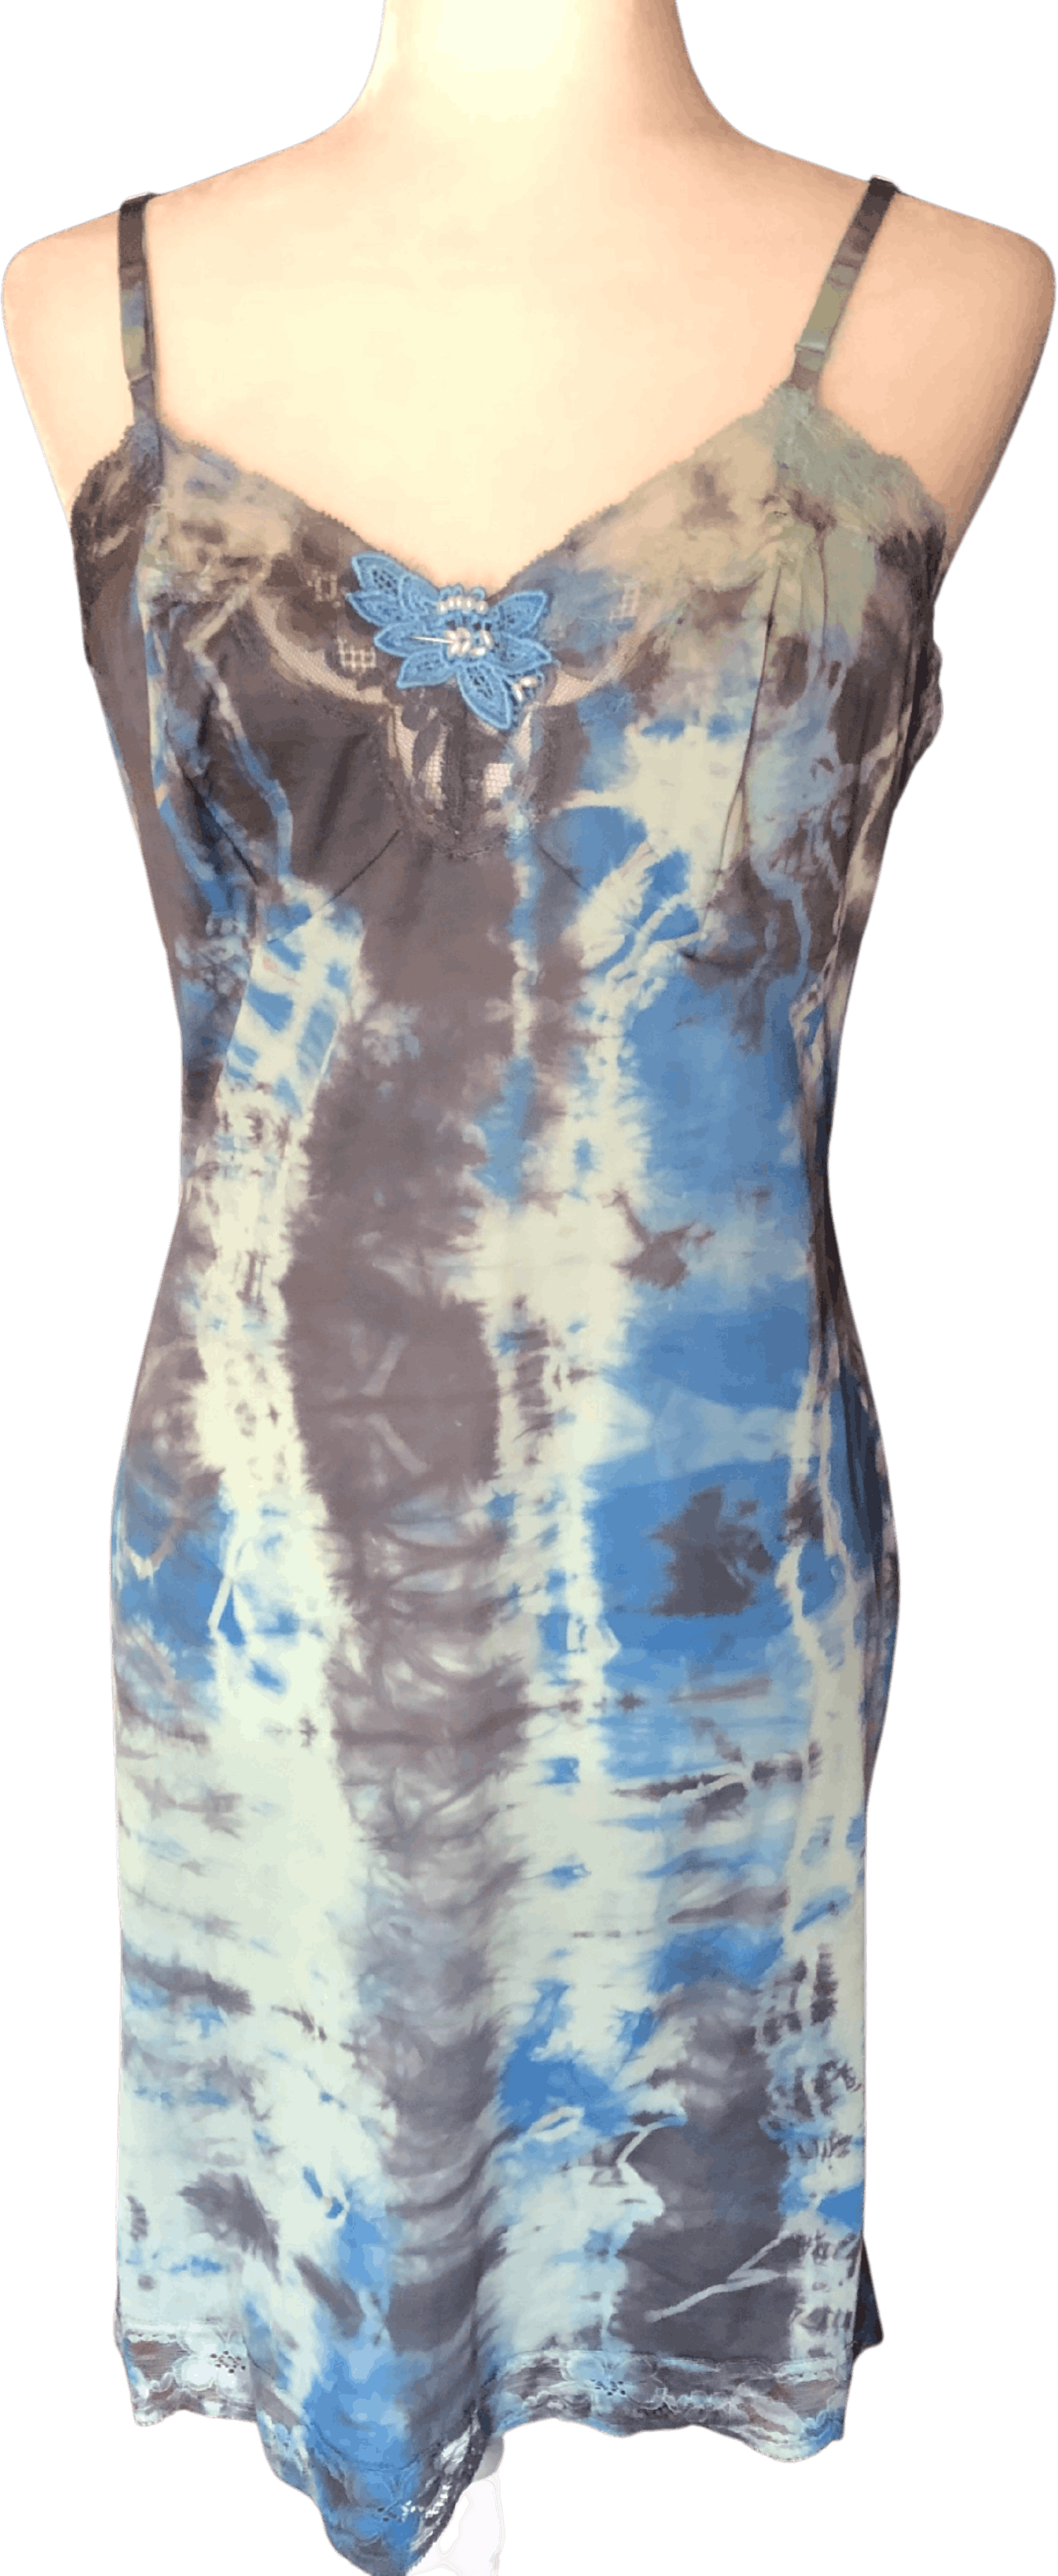 Vintage Tie Dye Slip Dress By Vanity Fair Shop Thrilling